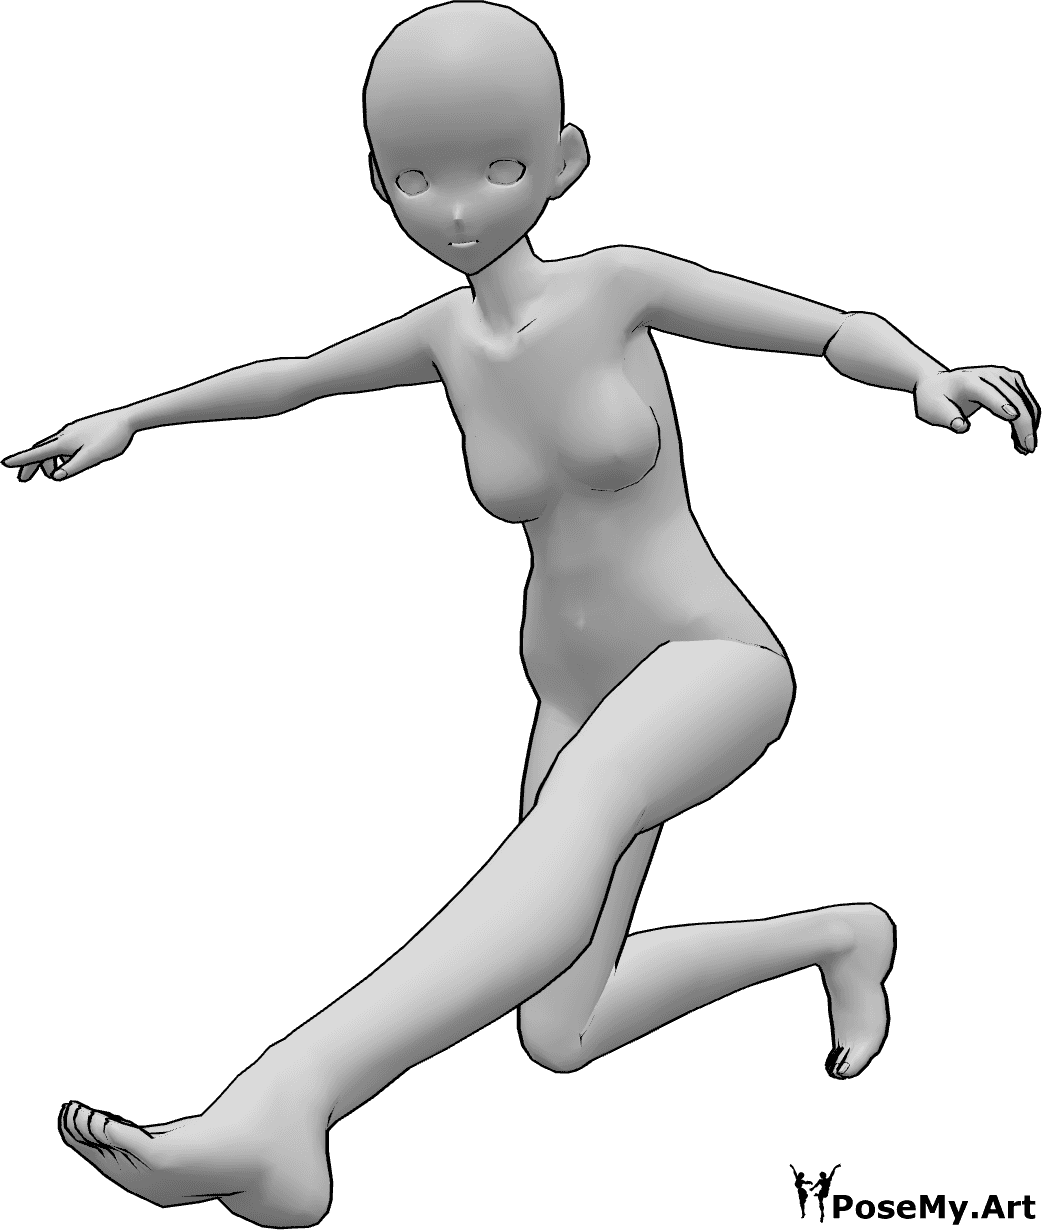 Référence des poses- Pose d'atterrissage dynamique de l'anime - Une femme animée atterrit, en équilibre sur ses mains et en regardant vers l'avant.